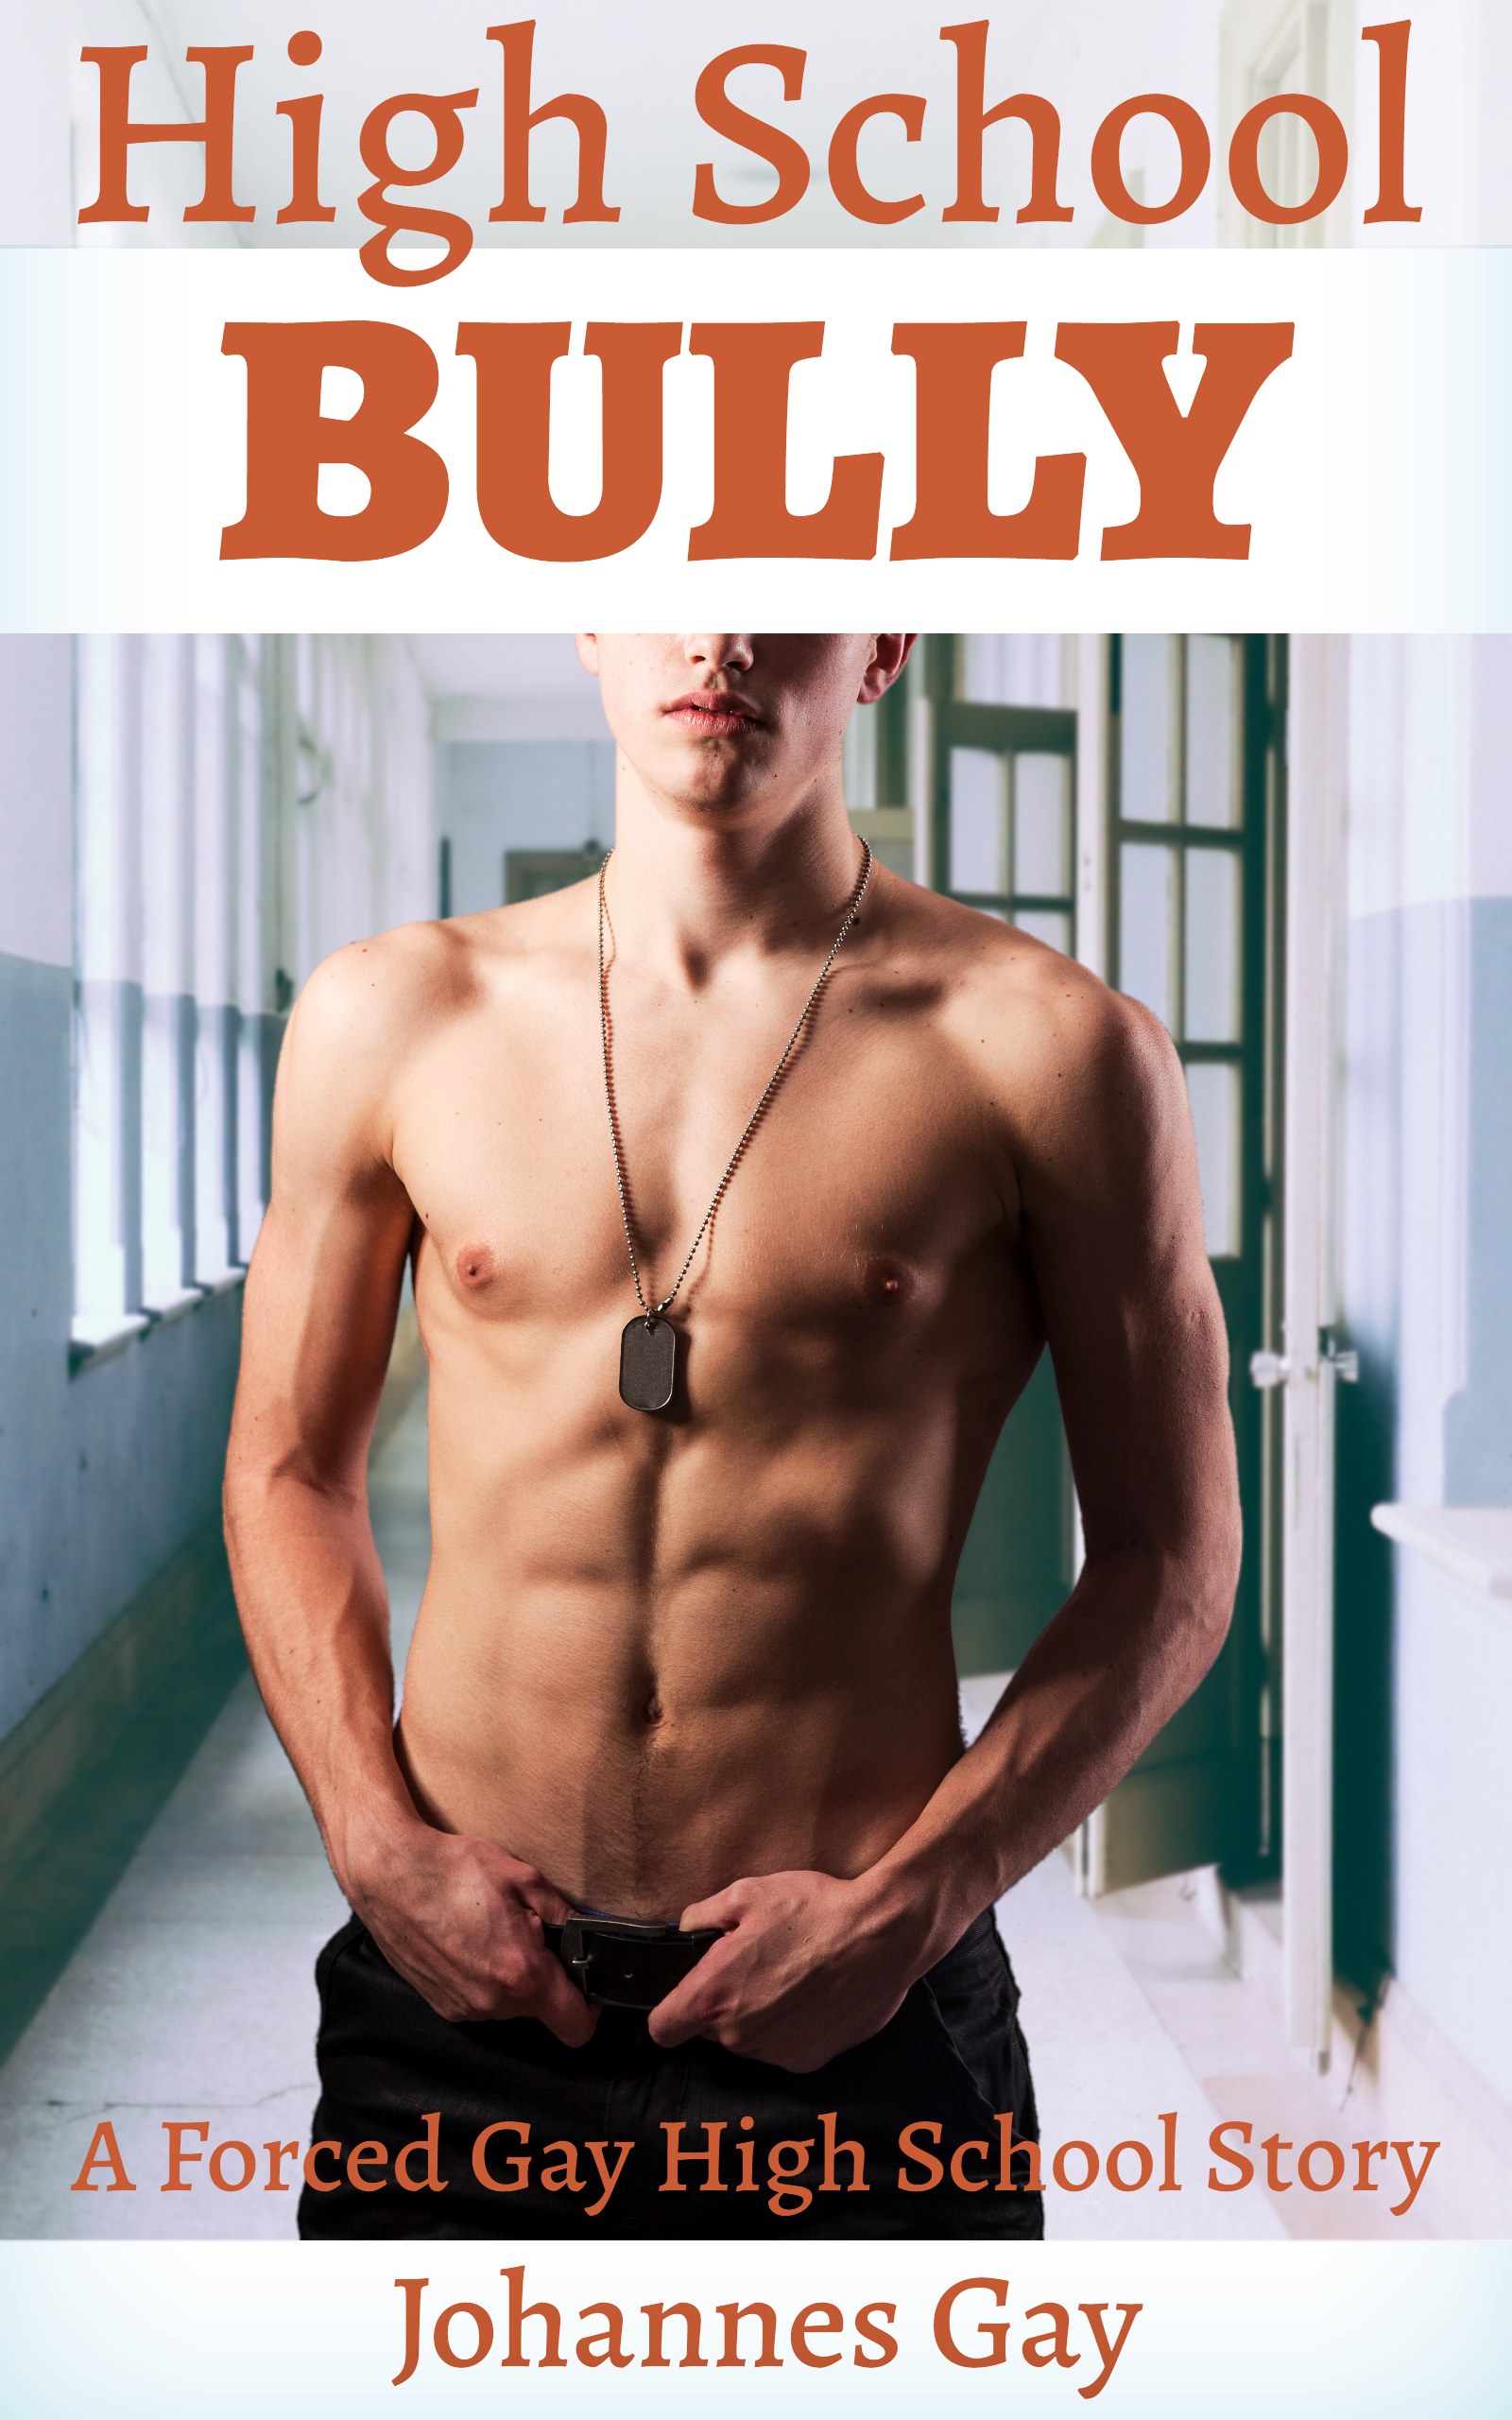 High School Gay Porn - Smashwords â€“ High School Bully (A Forced Gay High School Story) â€“ a book by  Johannes Gay